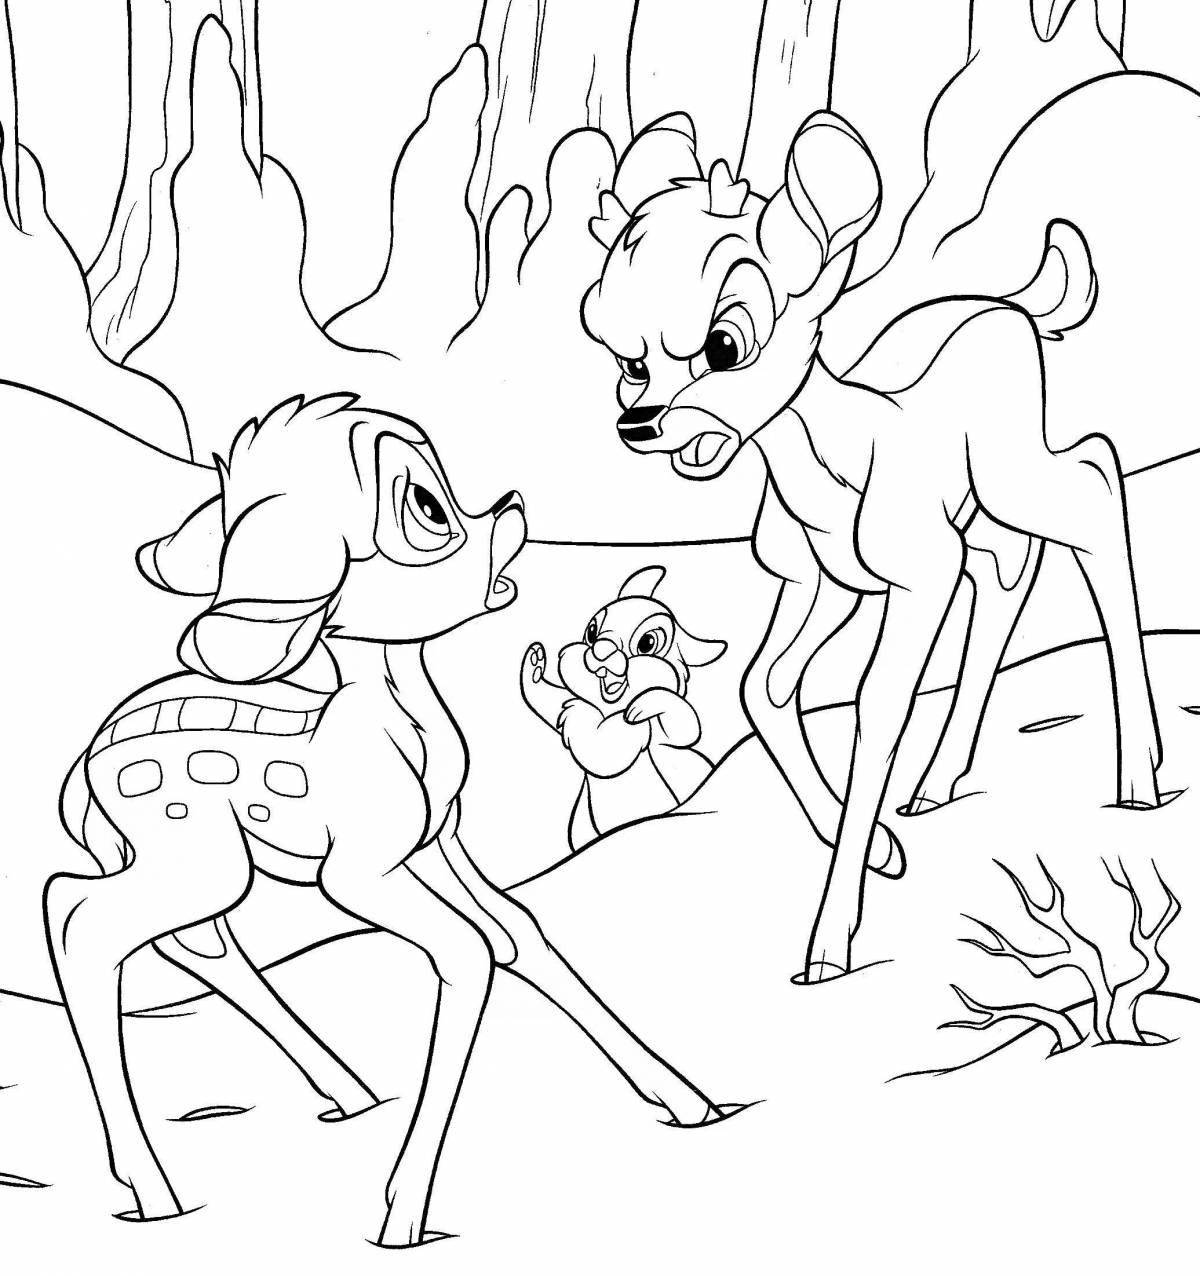 Colouring funny bambi faun